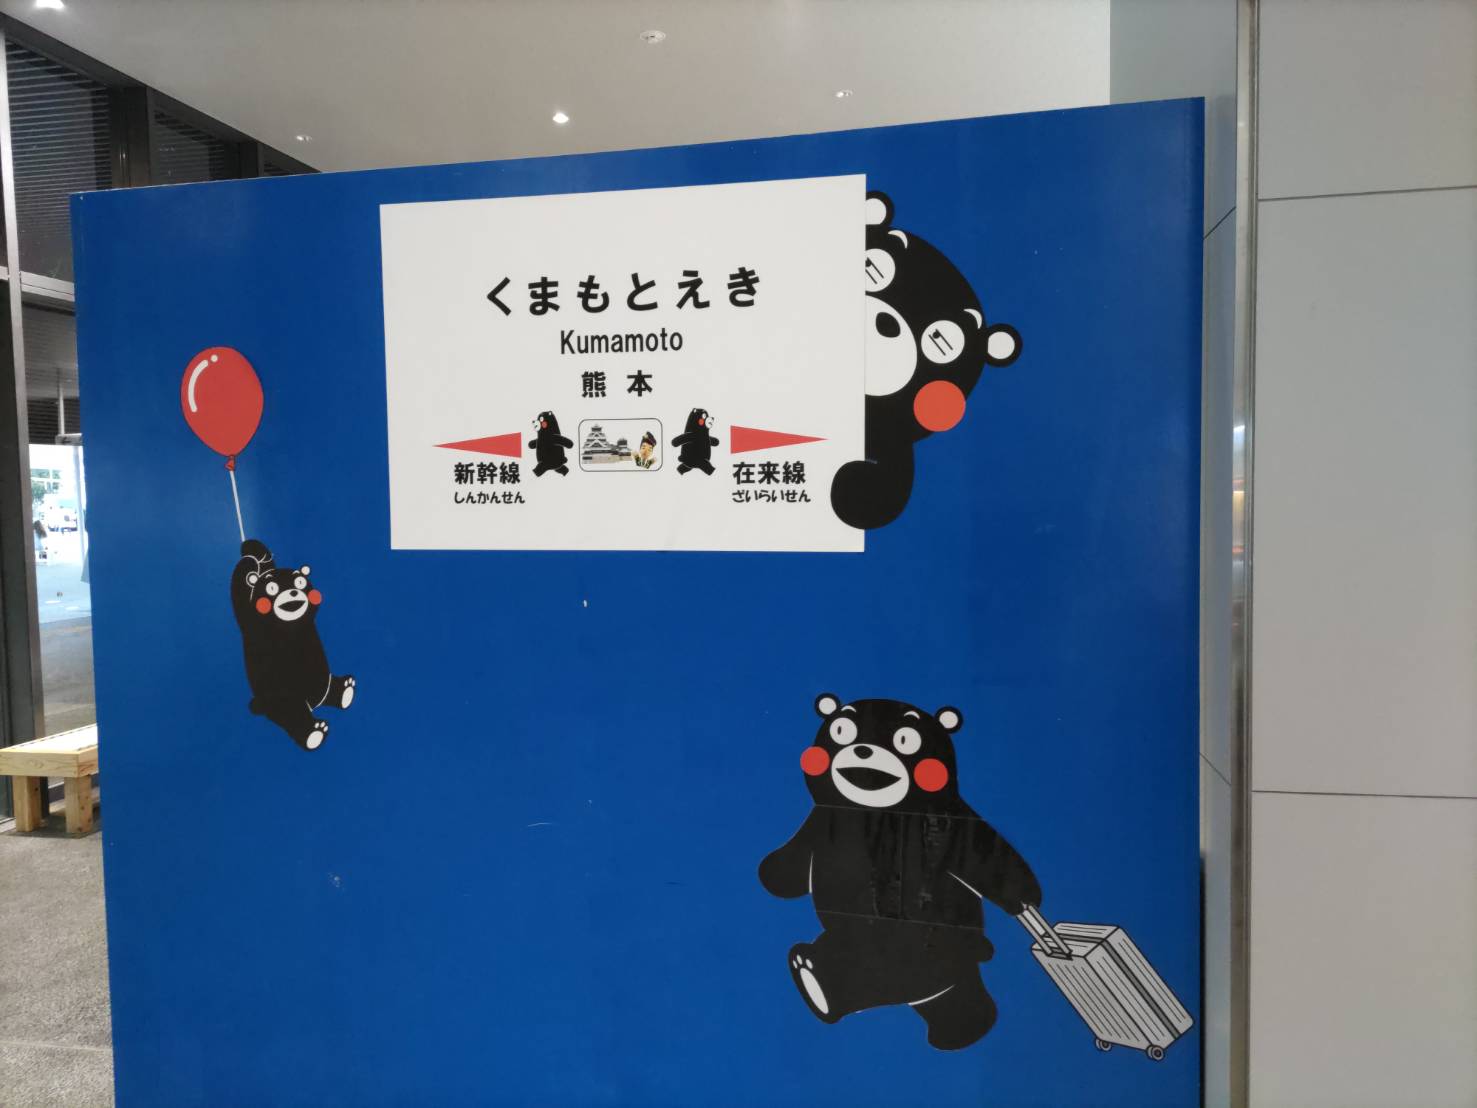 熊本駅の駅名の絵が描かれた写真